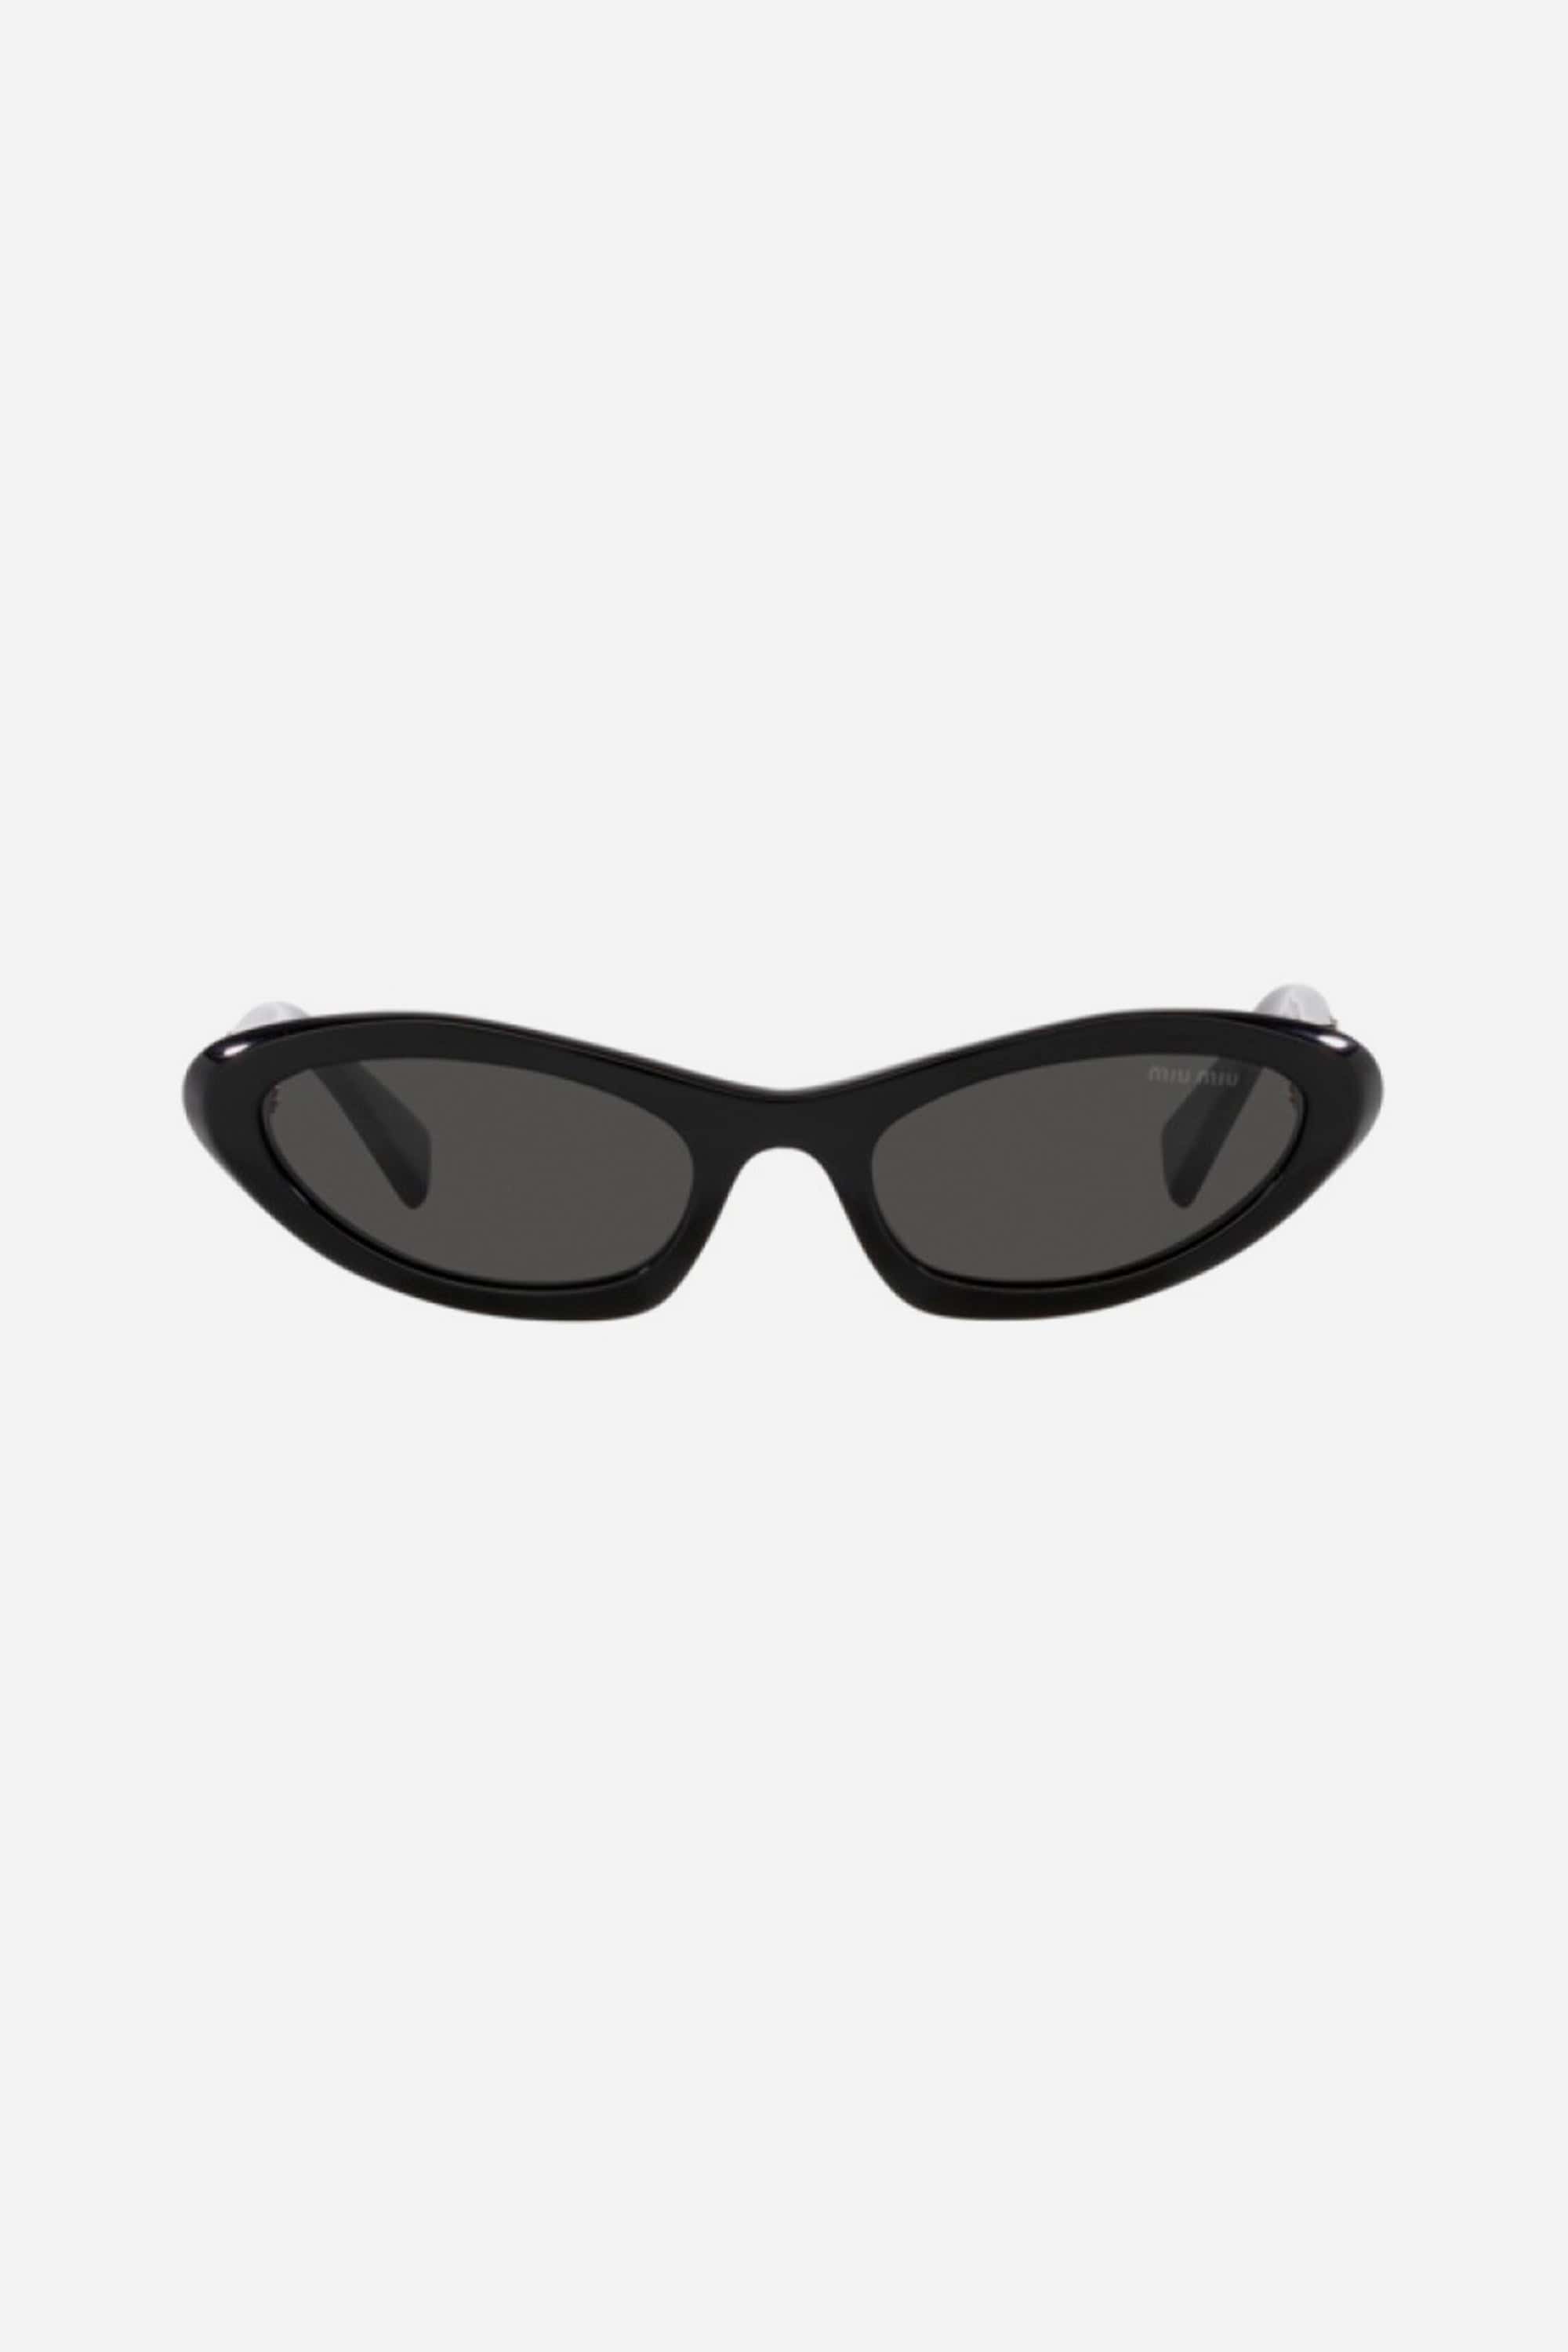 Miu Miu cat-eye micro black sunglasses - Eyewear Club